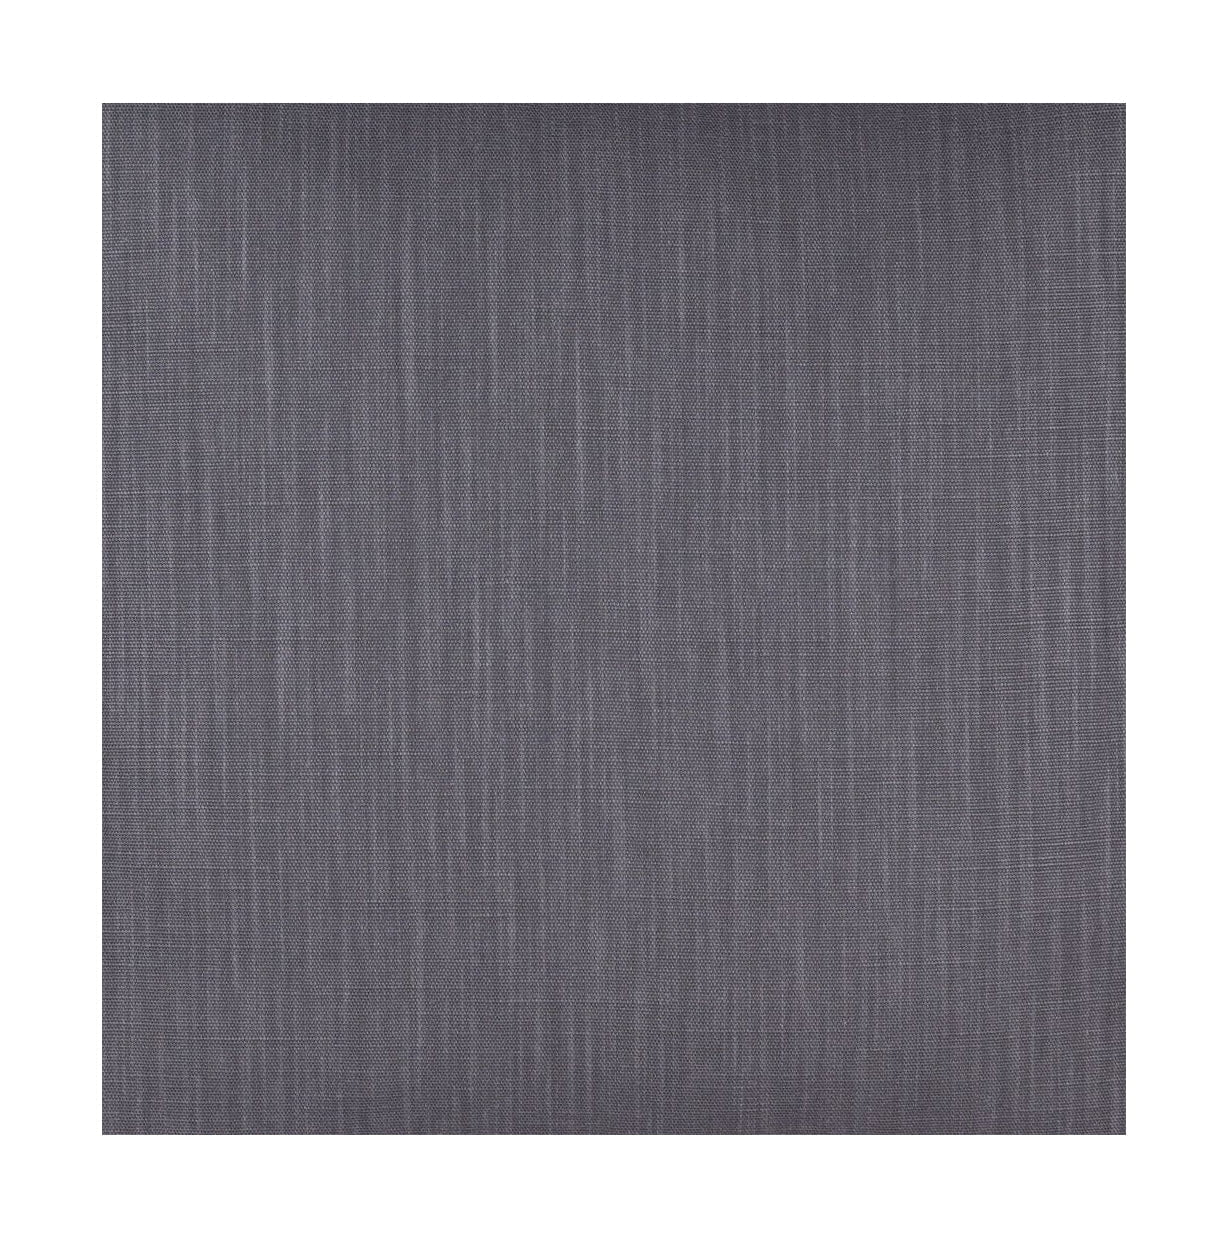 Larghezza del tessuto Spira Klotz 150 cm (prezzo per metro), grigio